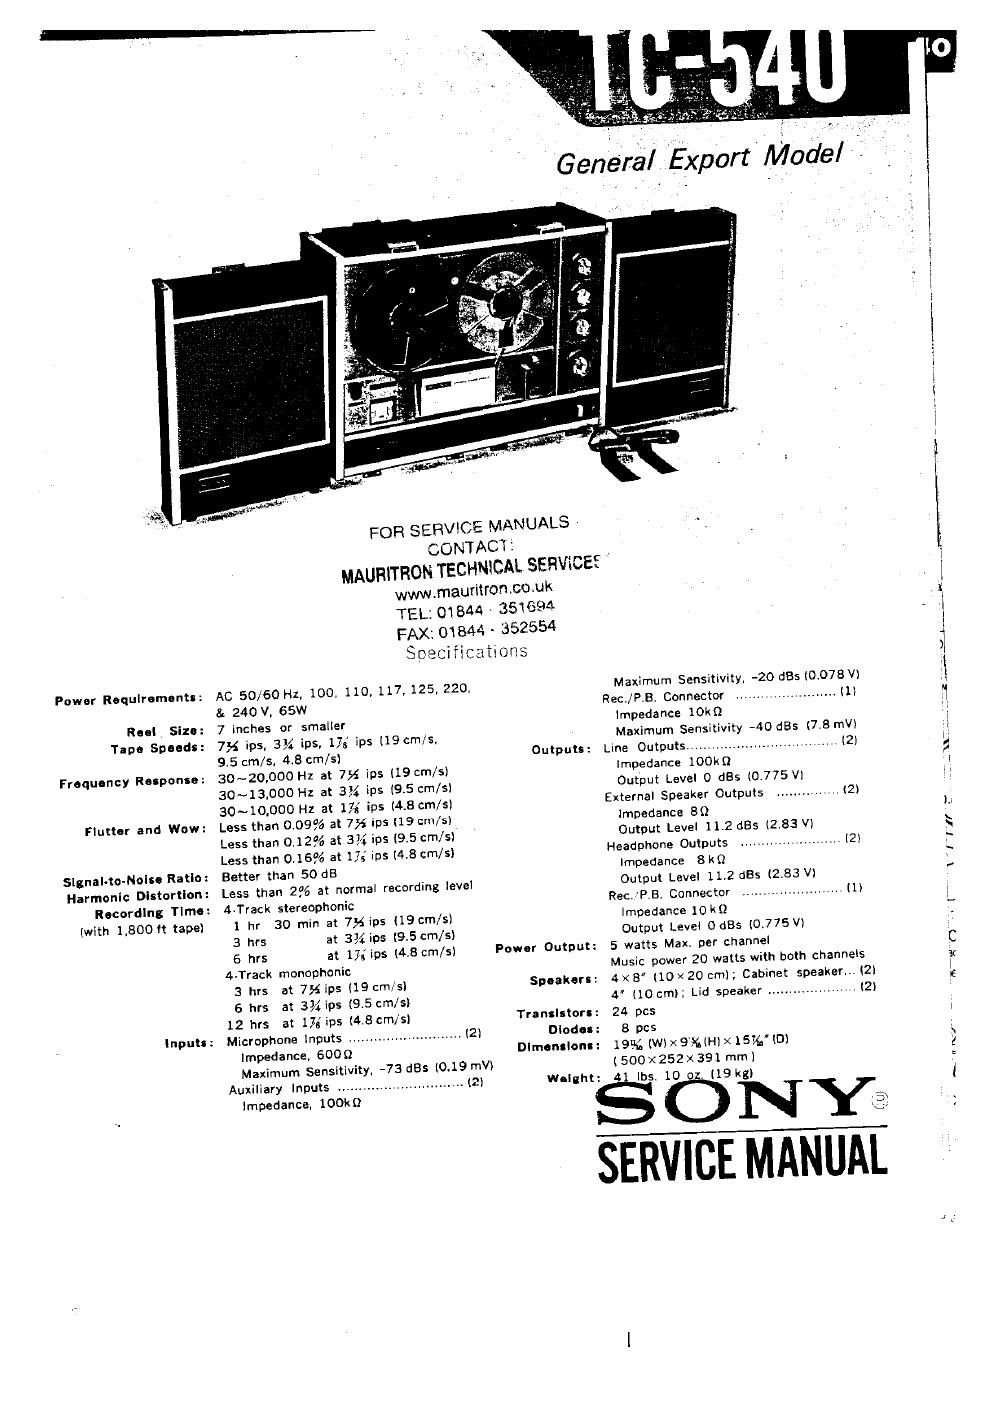 sony tc 540 service manual